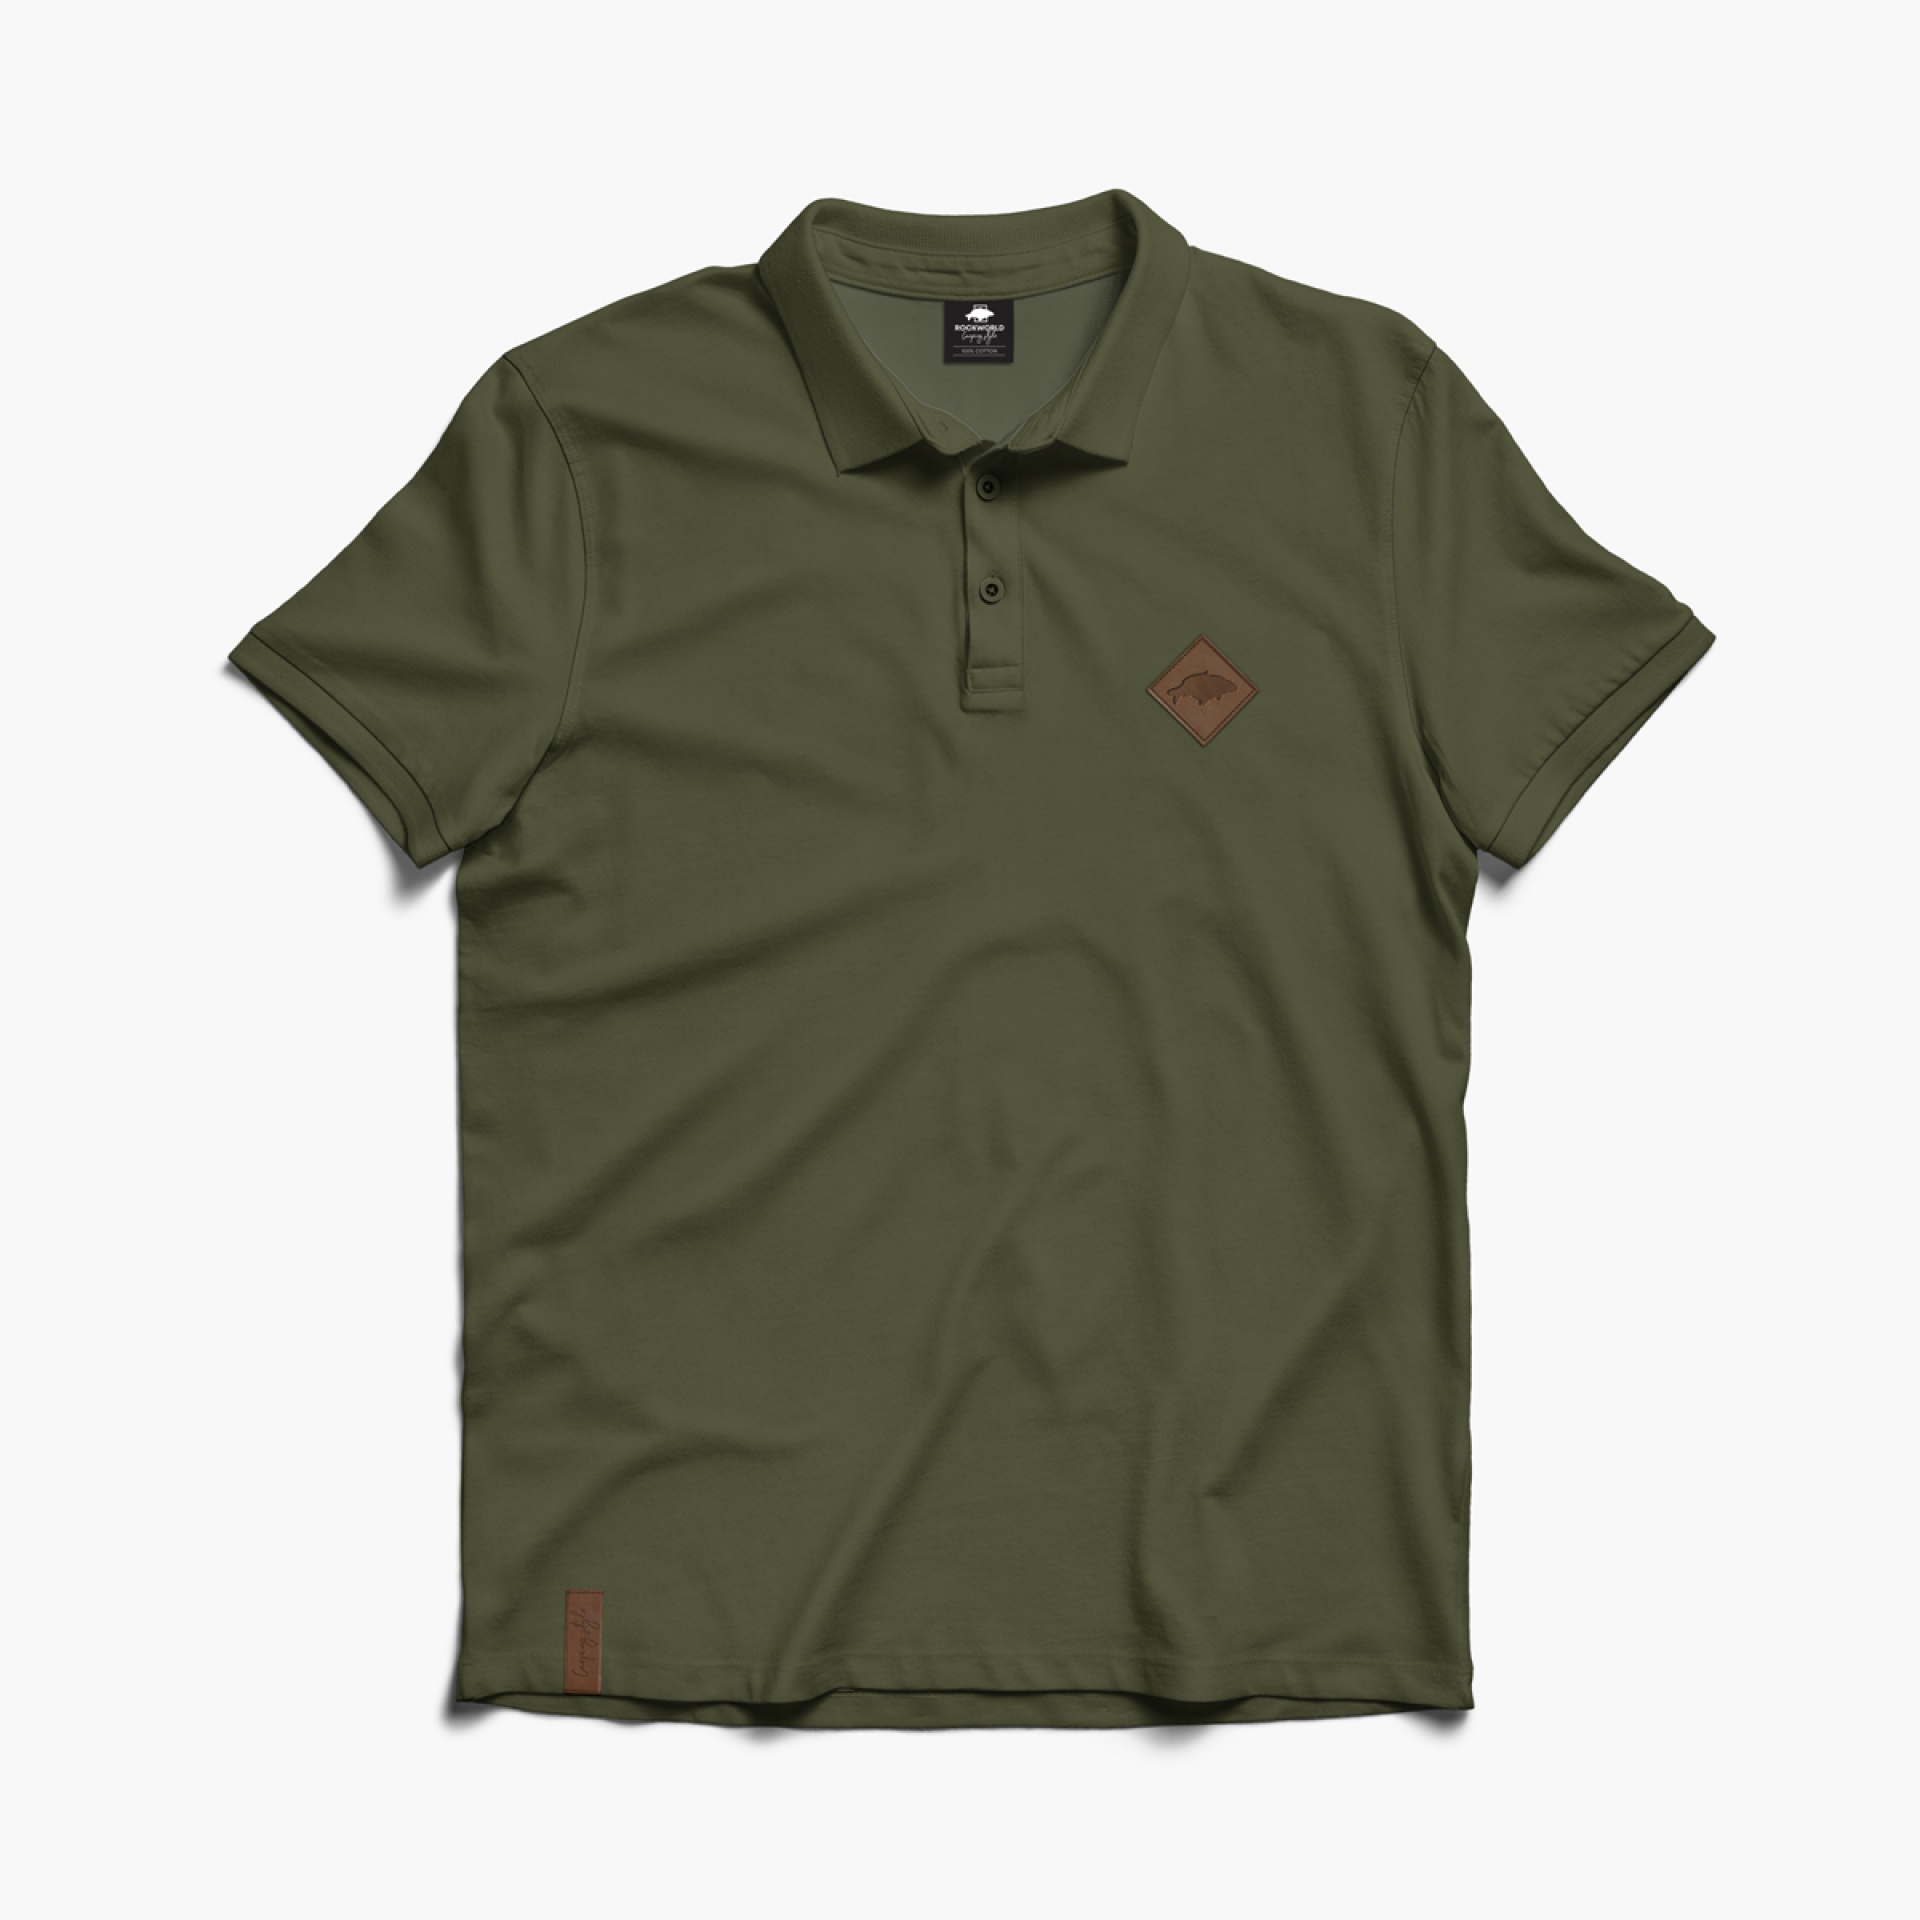 Rockworld - Camiseta polo para hombre en color caqui